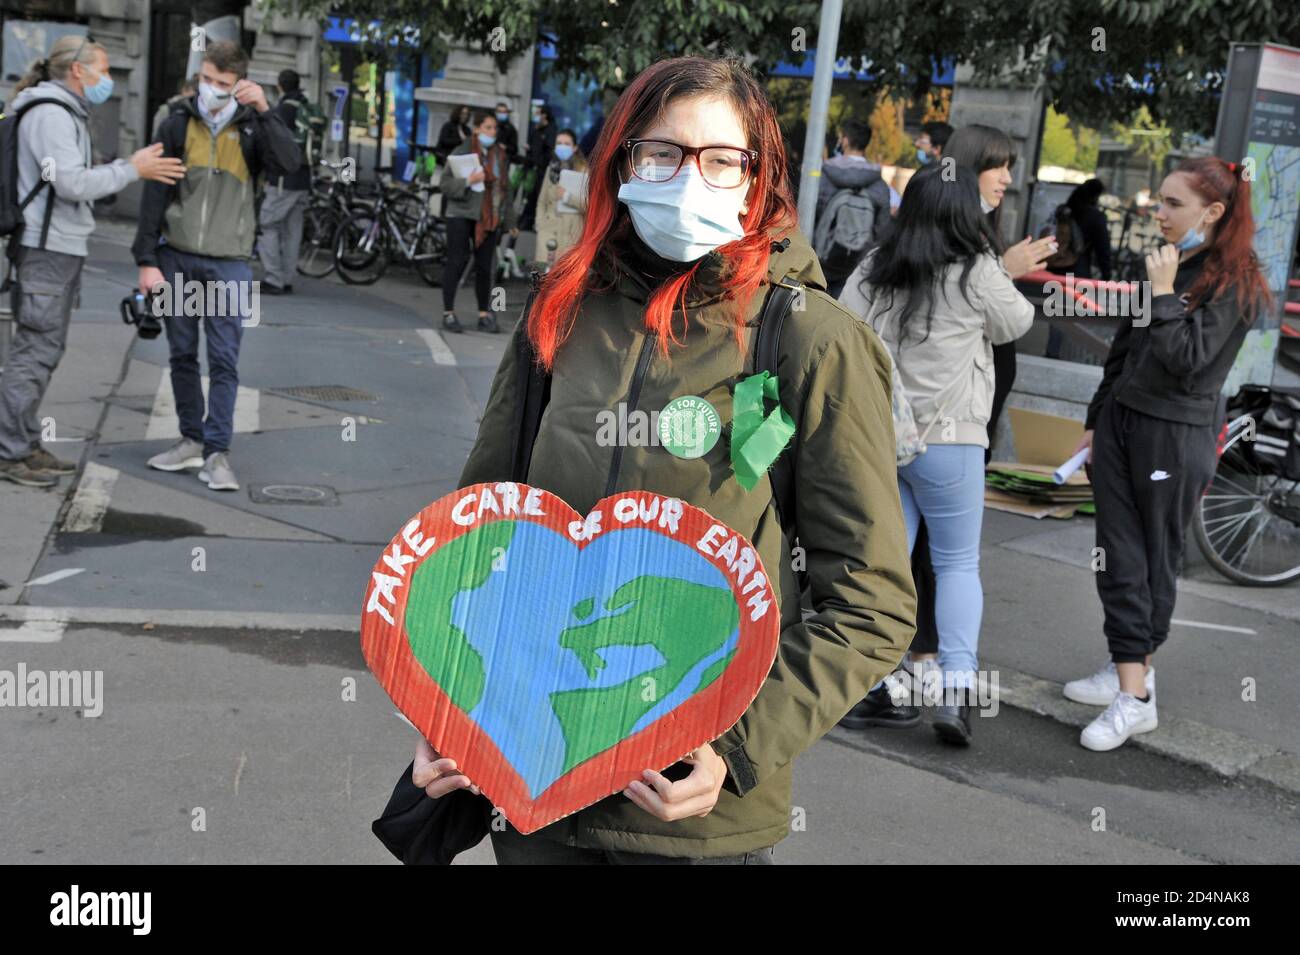 Milano (Italia), 2020 ottobre, i giovani del venerdì per il futuro, dopo l'interruzione dovuta all'epidemia di Covid 19, tornano in piazza per protestare contro il cambiamento climatico, cercando di rispettare le misure di sicurezza healt. Foto Stock